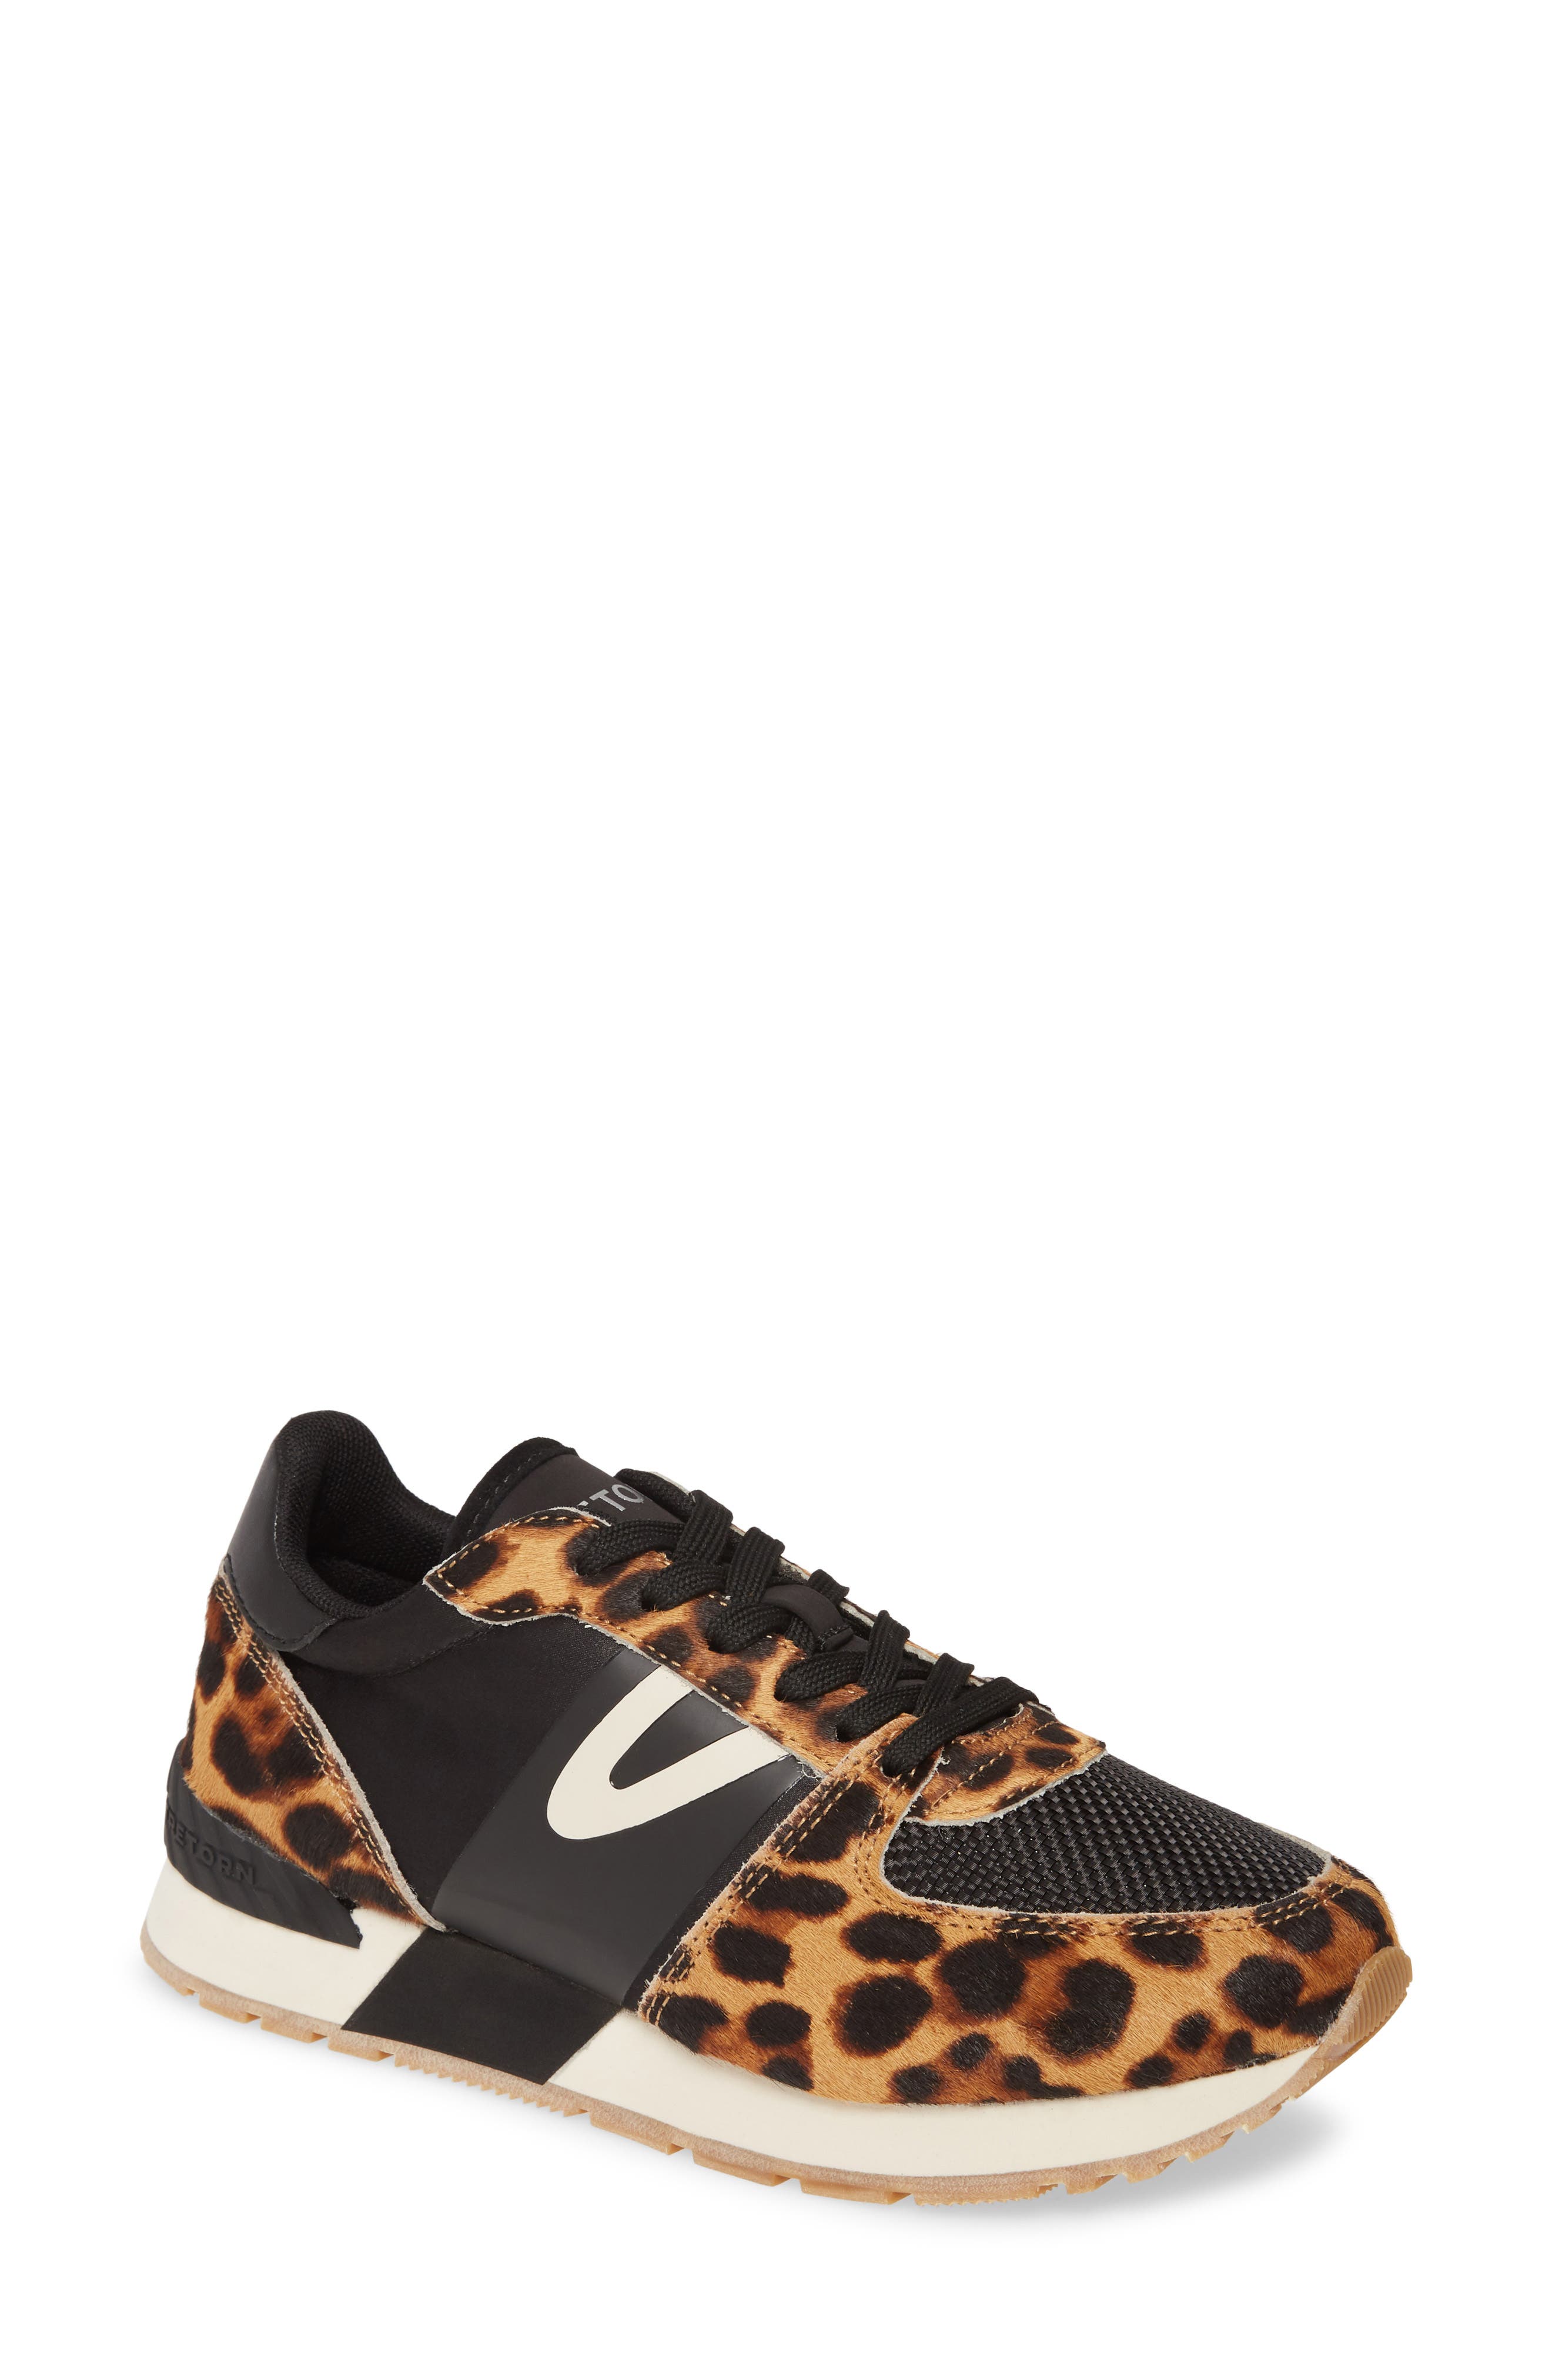 tretorn leopard sneakers